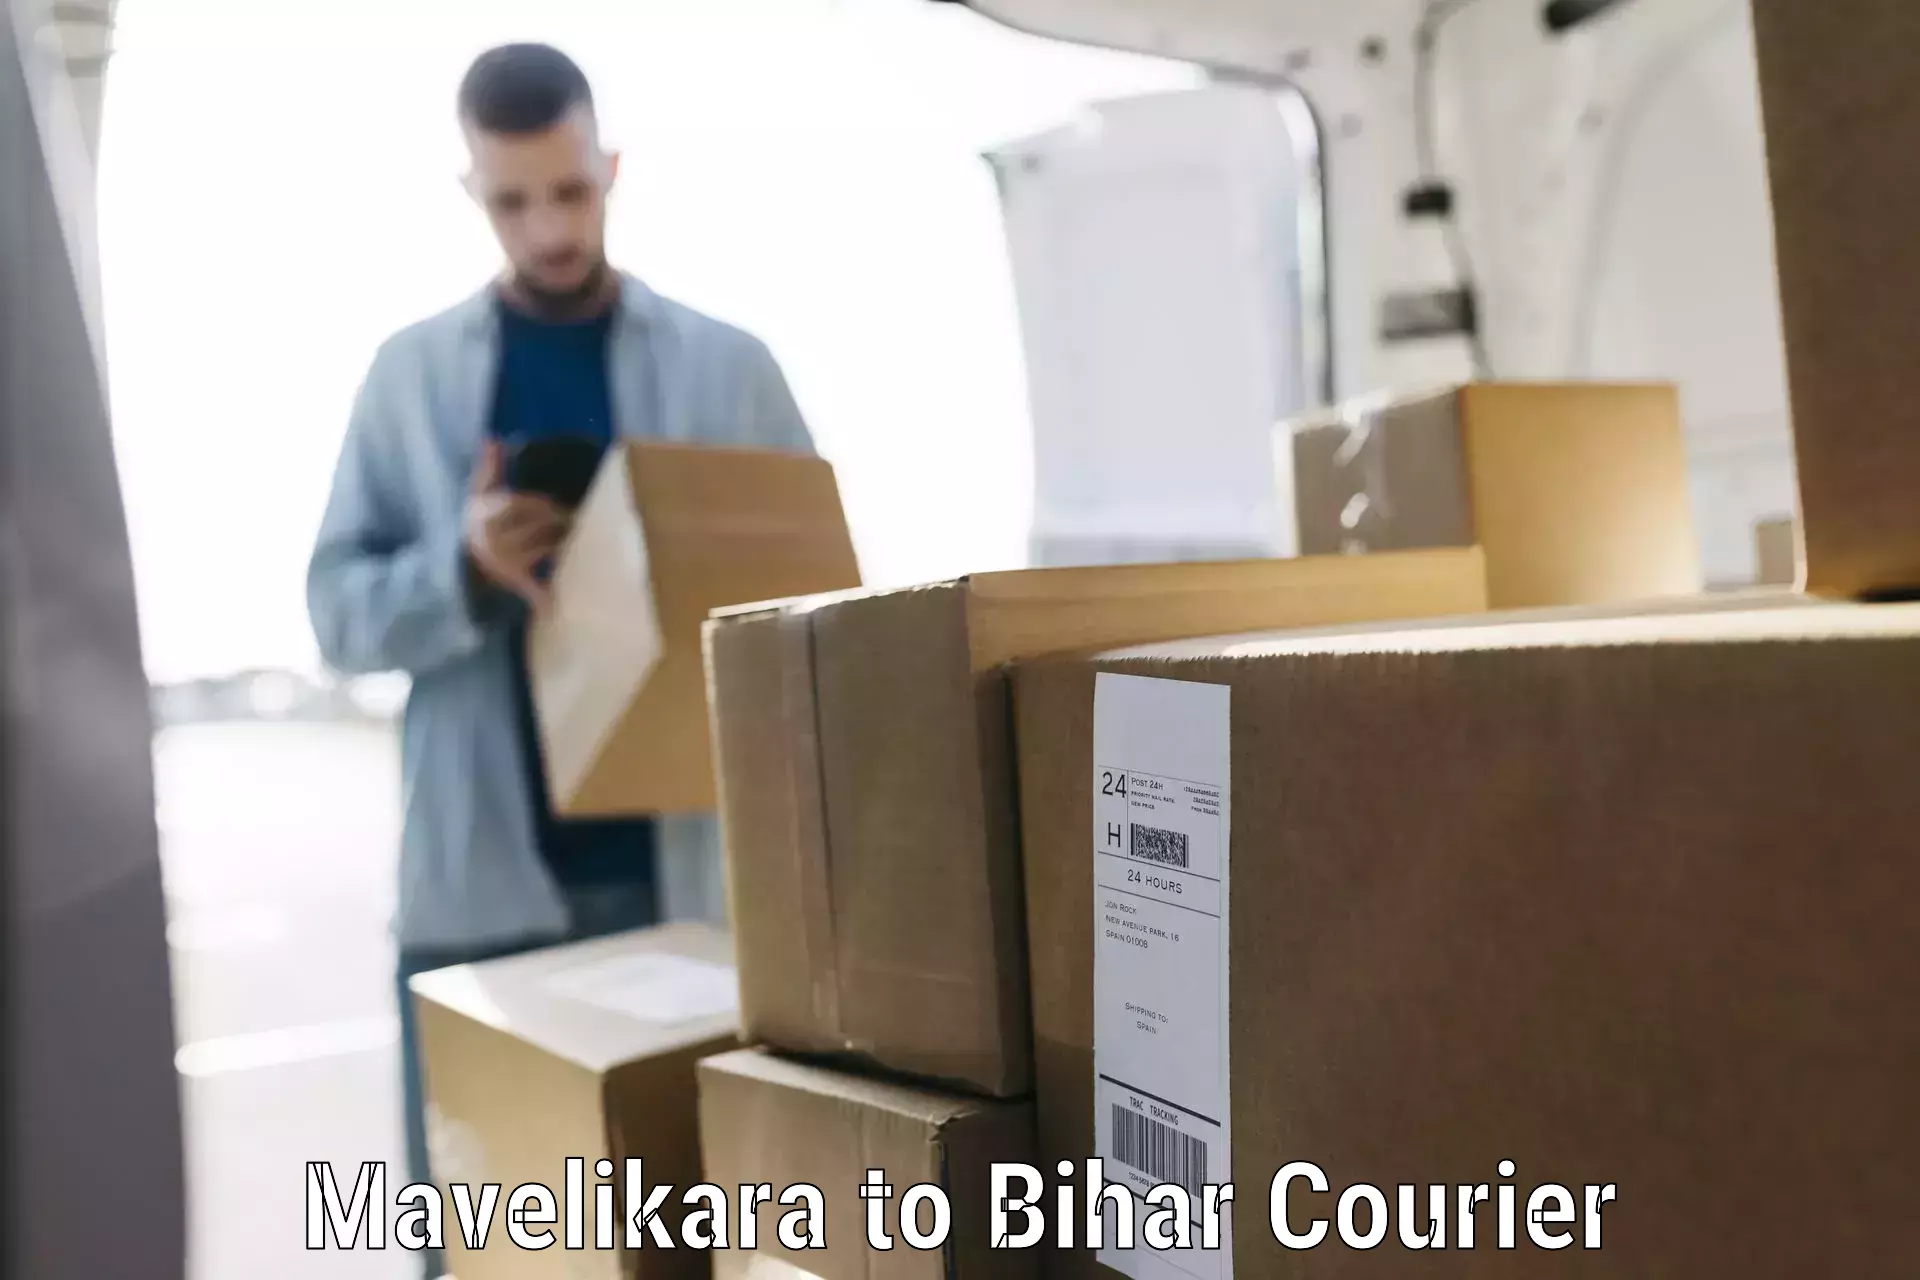 Digital baggage courier Mavelikara to Malmaliya